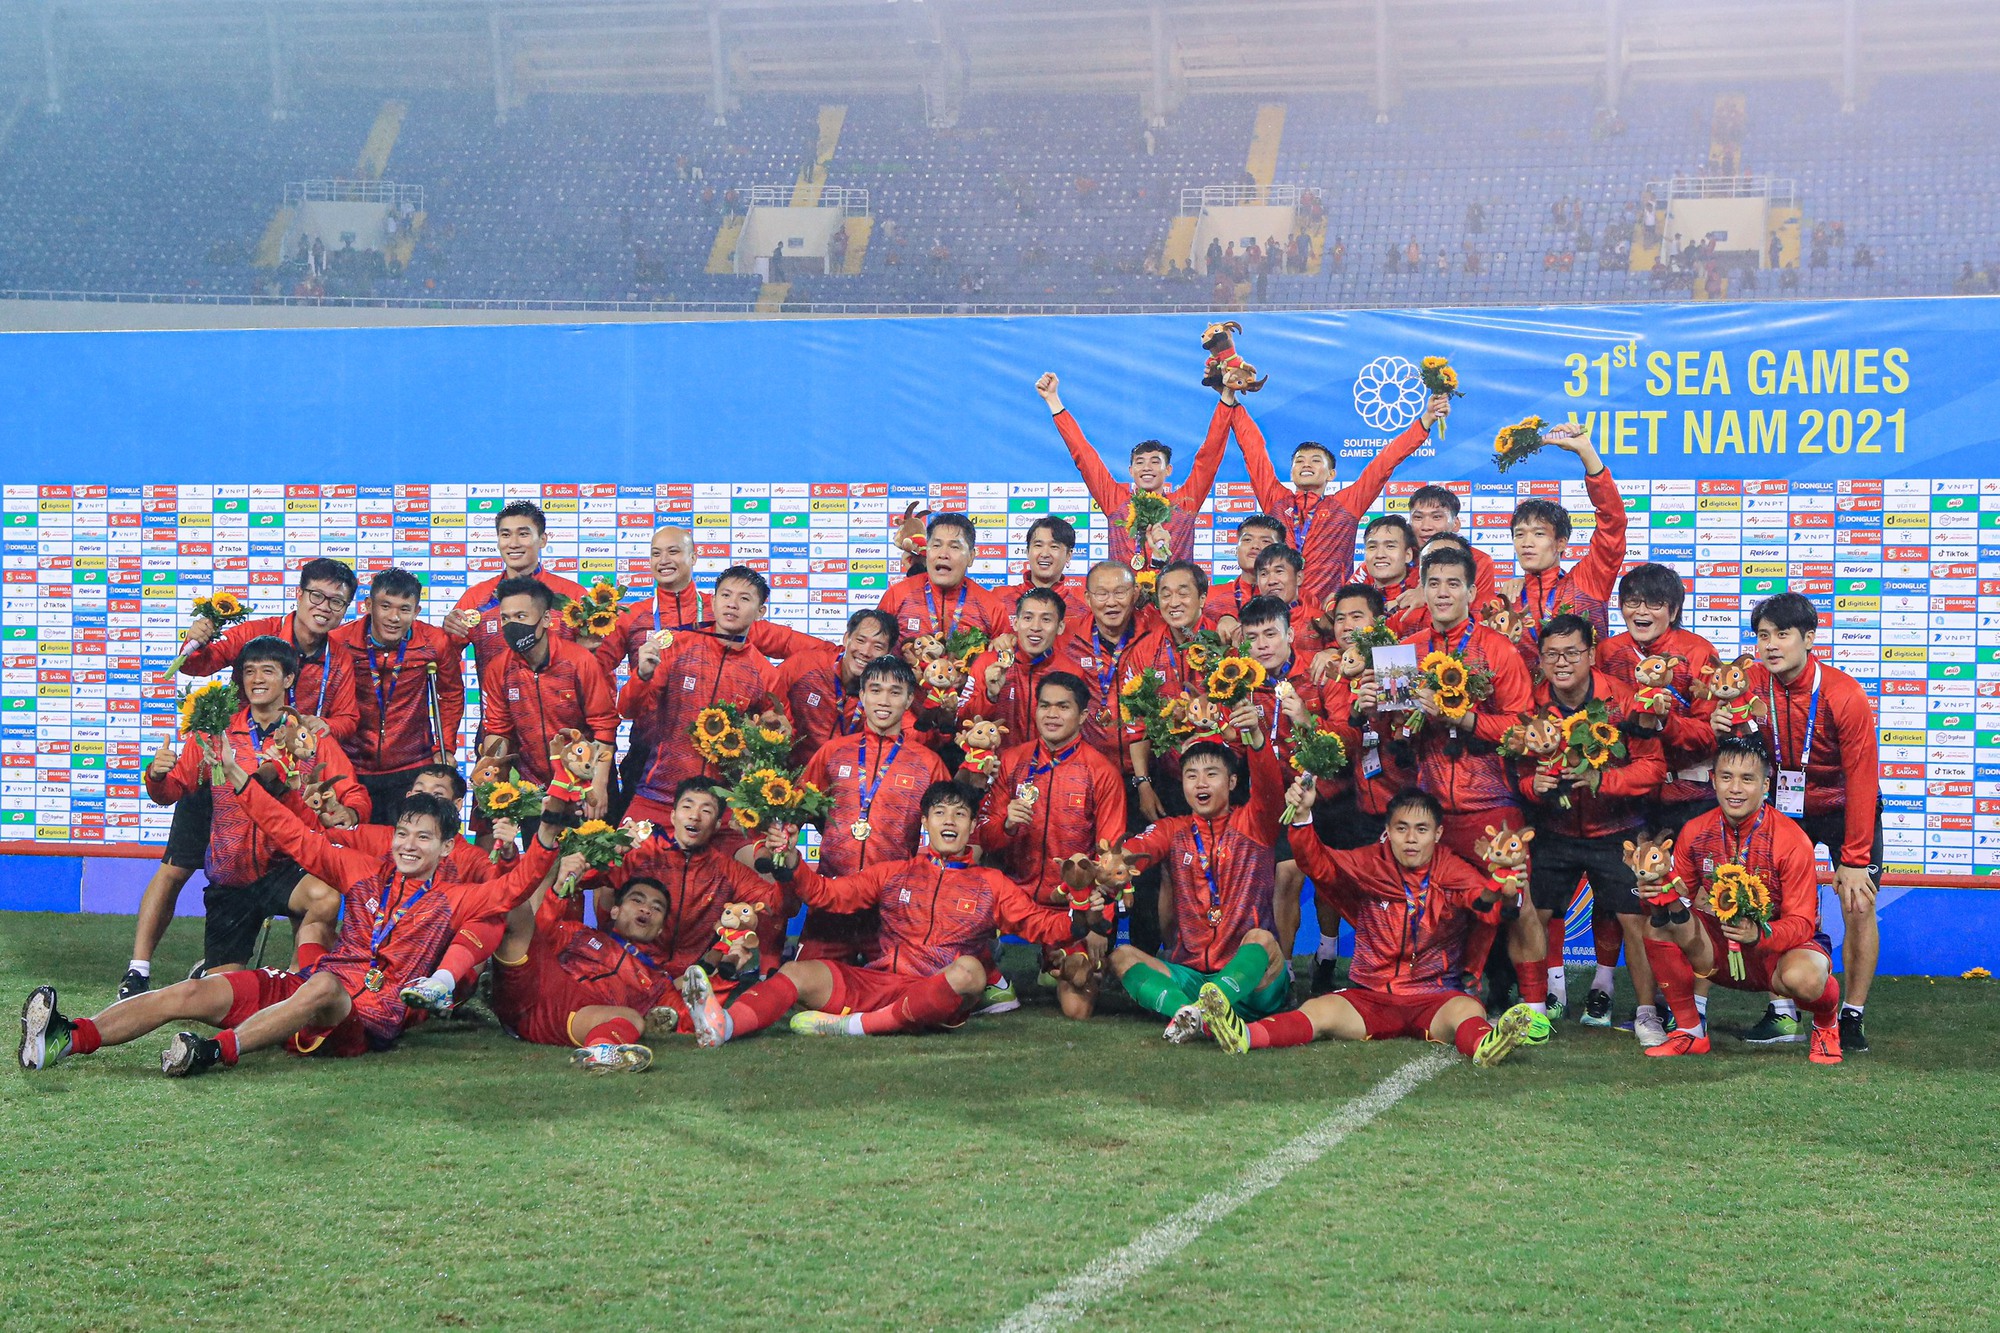 Đội tuyển bóng đá nam U23 Việt Nam đã nhiều lần ghi dấu ấn trong lịch sử bóng đá quốc gia, với nhiều chiến thắng đầy cảm xúc và kịch tính. Hãy xem hình ảnh của đội bóng này để cảm nhận được sự nỗ lực và tinh thần thể thao của các cầu thủ trẻ và tài năng.